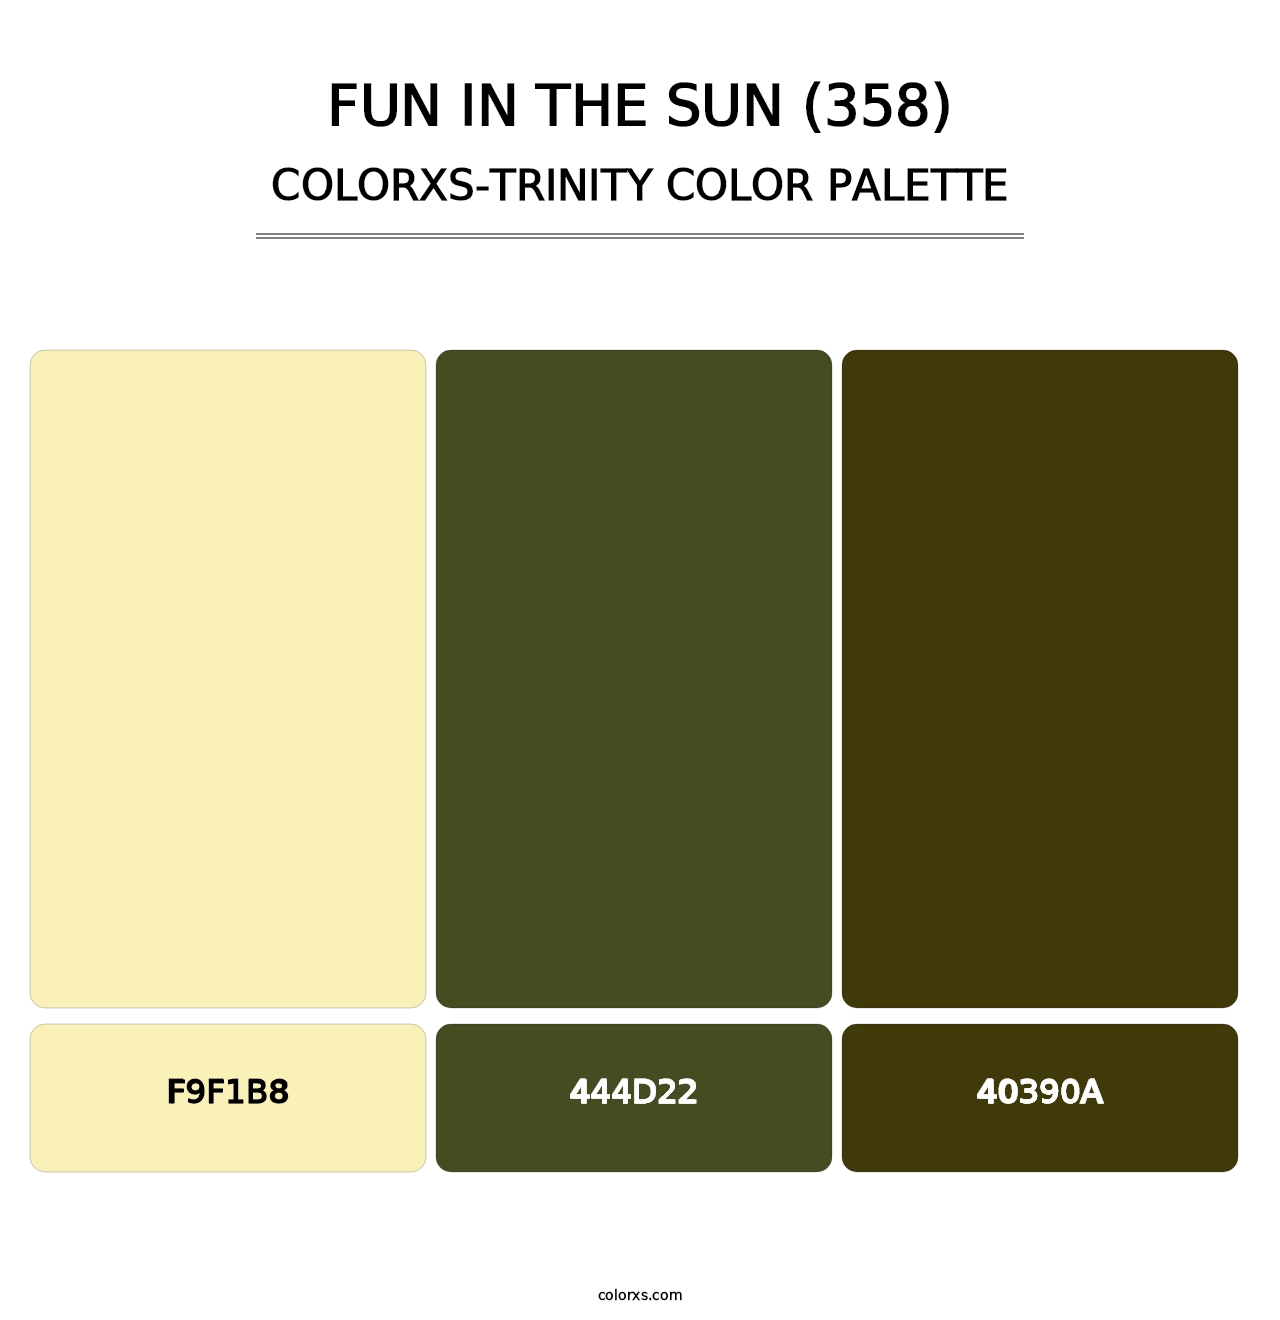 Fun in the Sun (358) - Colorxs Trinity Palette